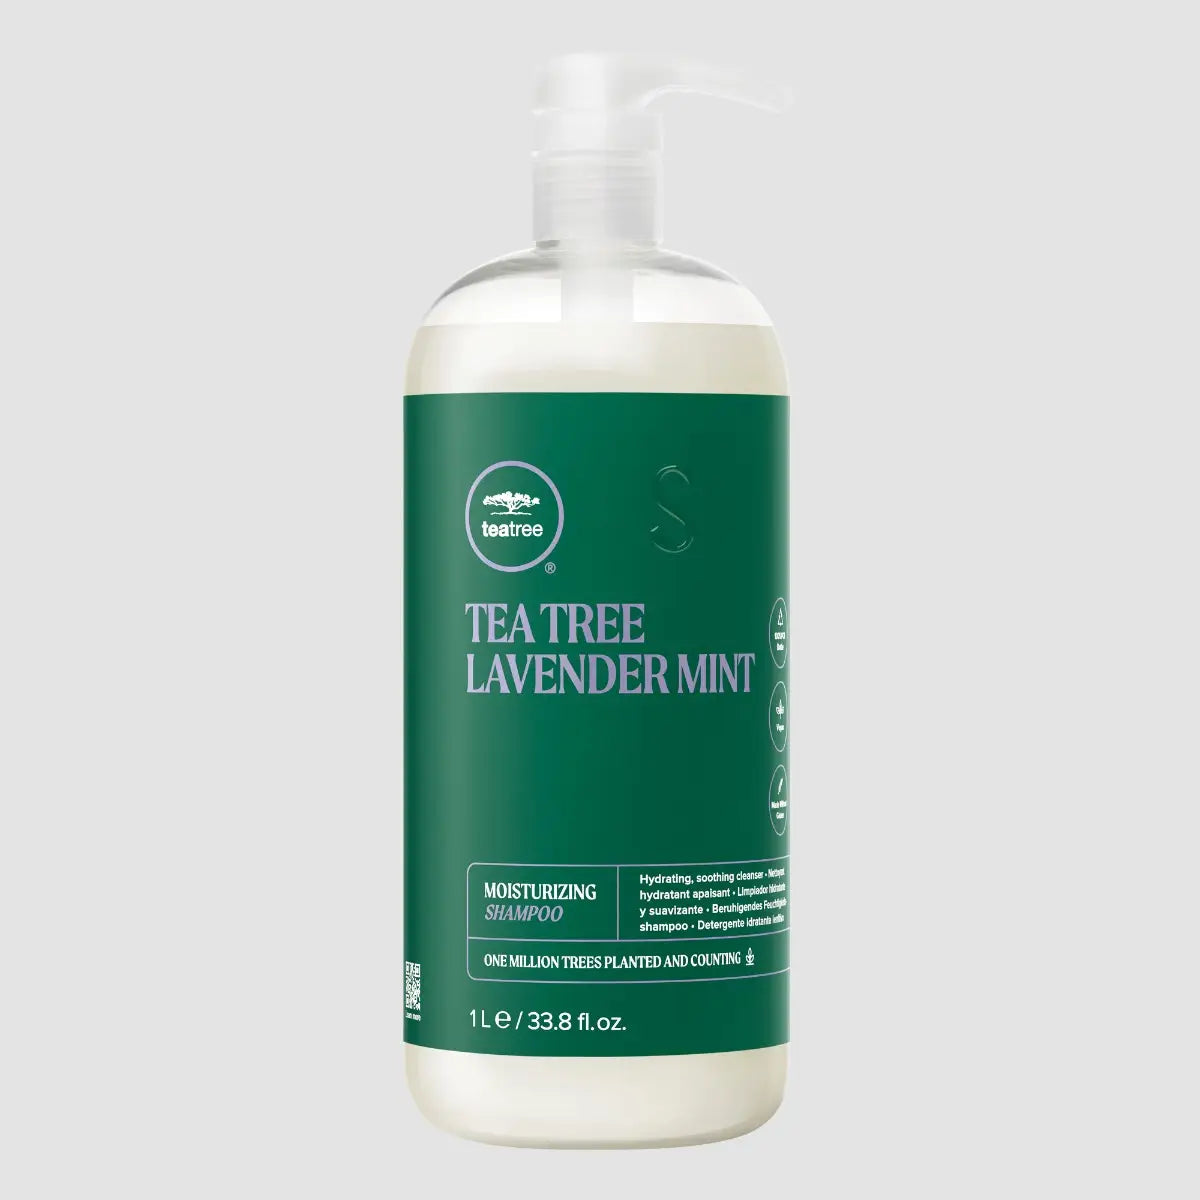 TEA TREE - Lavender Mint Moisturizing Shampoo